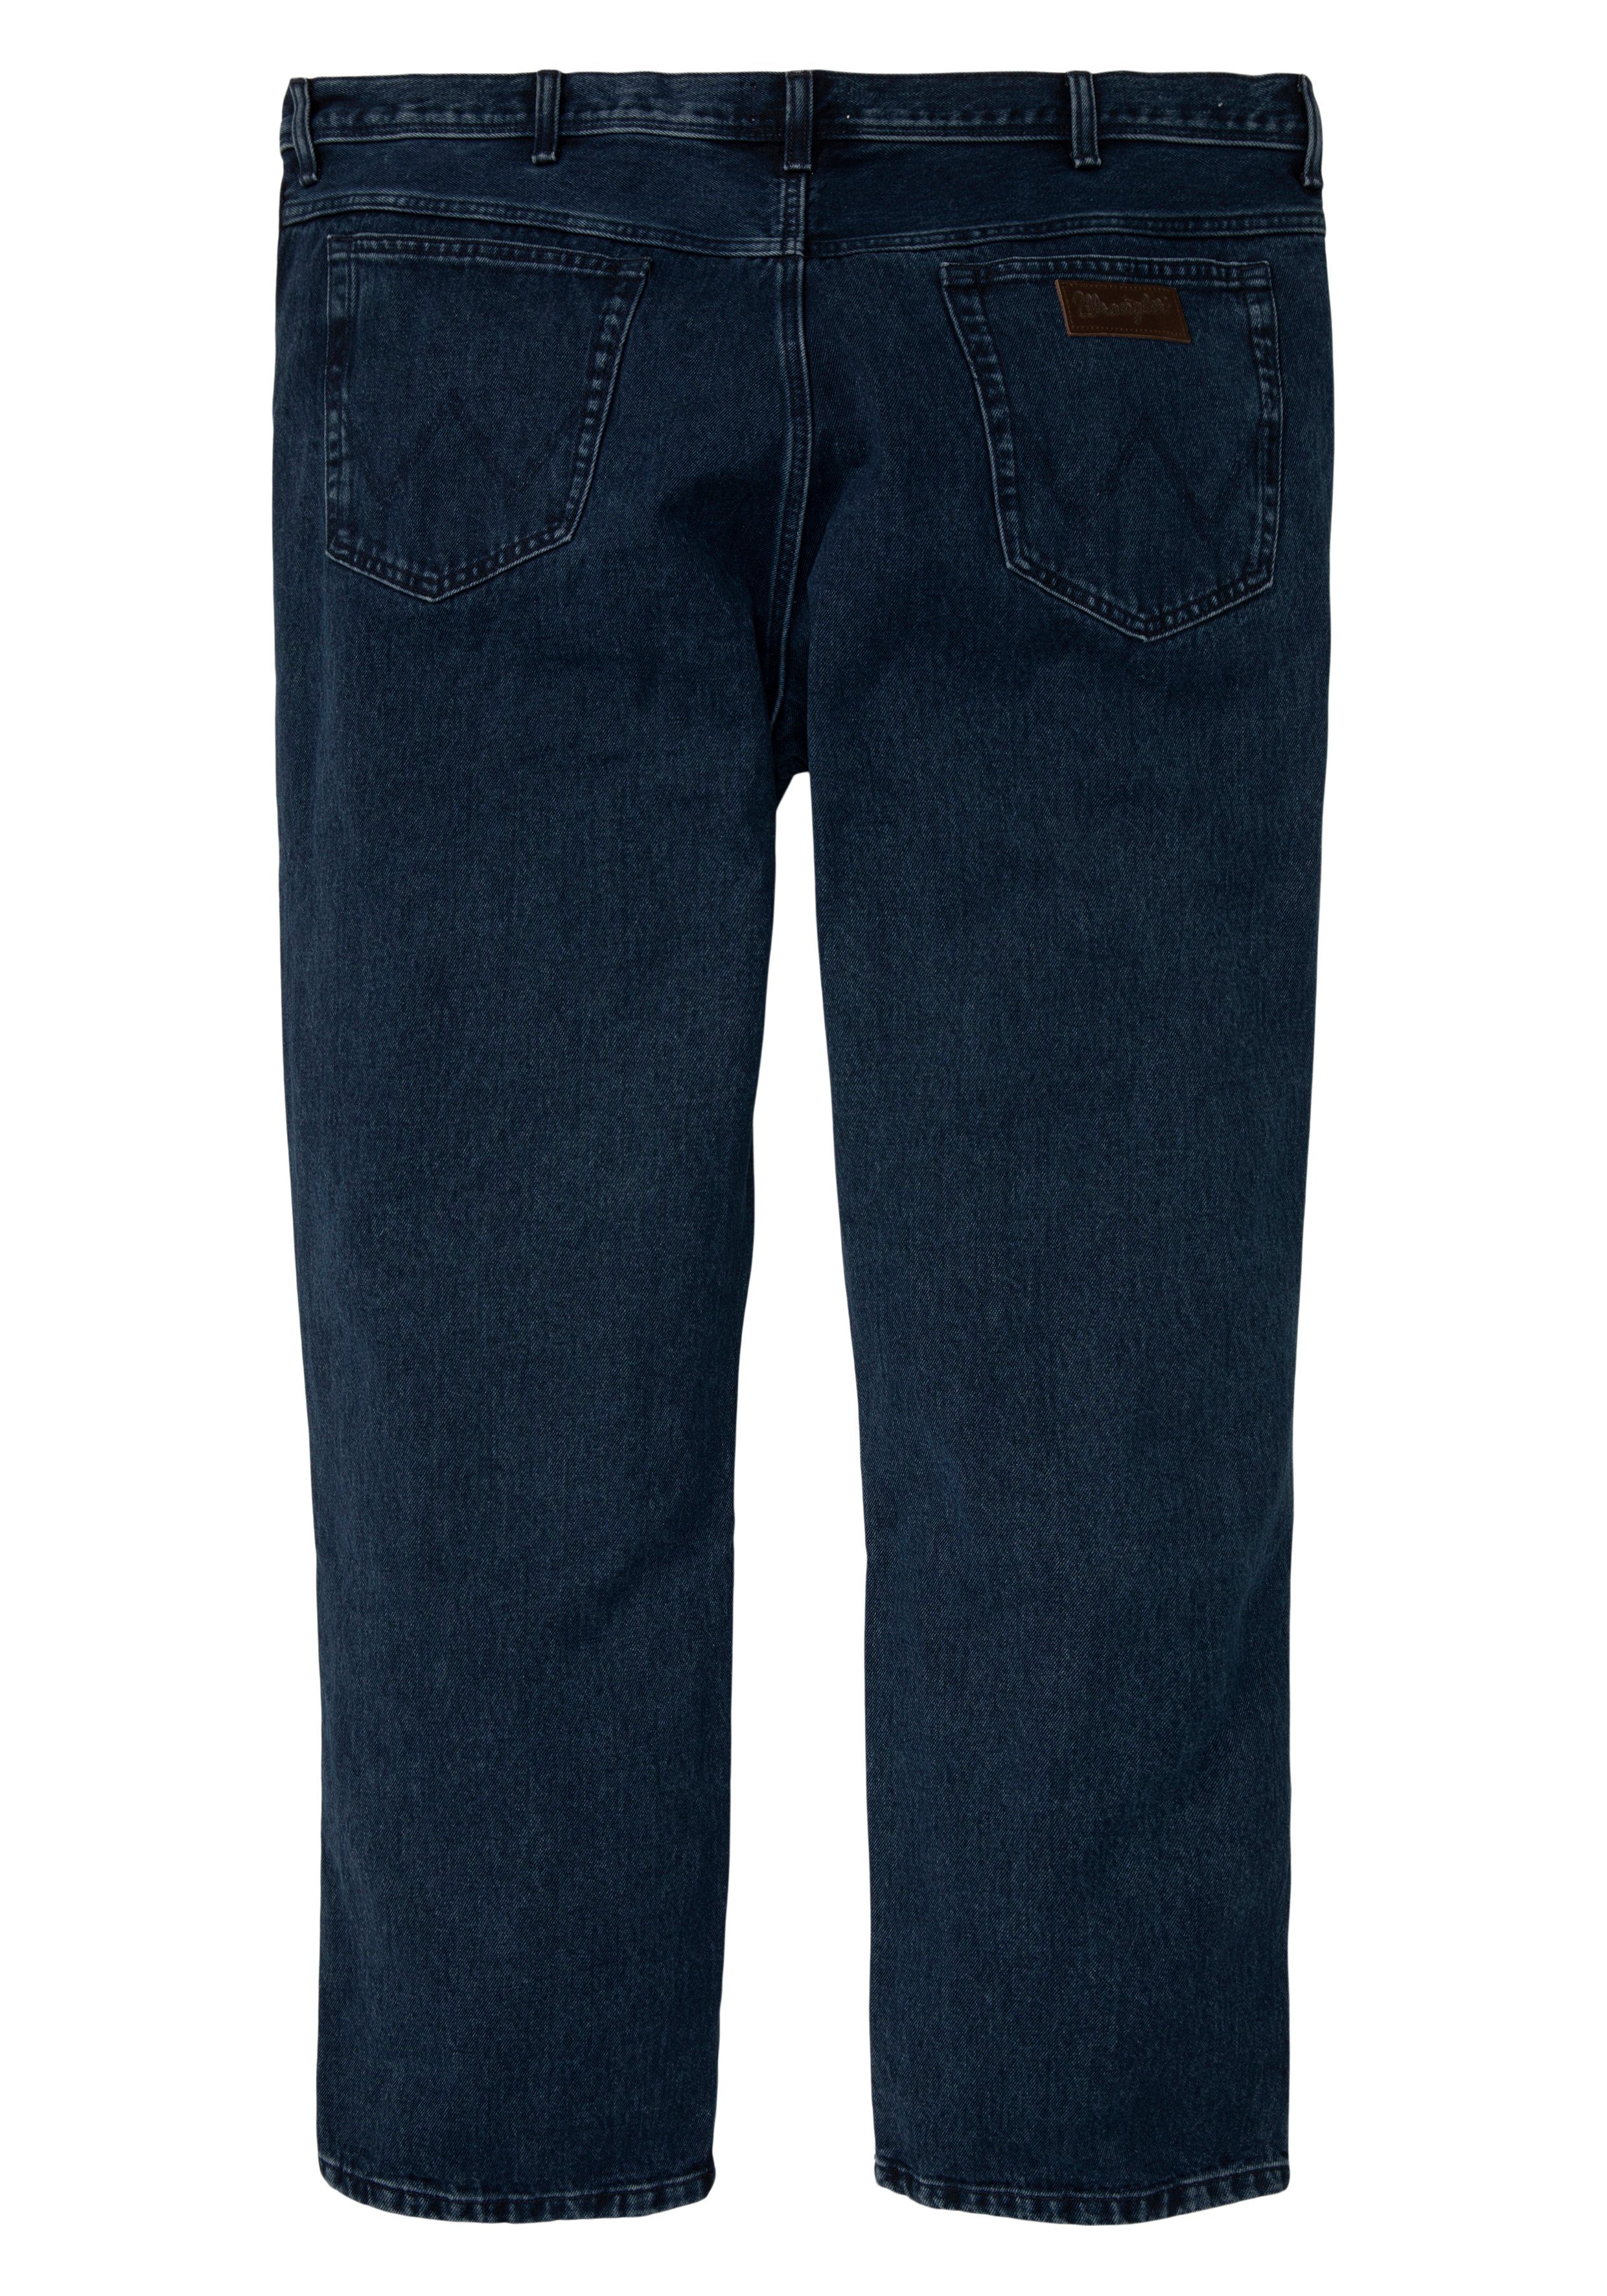 Gerade coal blue stone Wrangler Texas Jeans